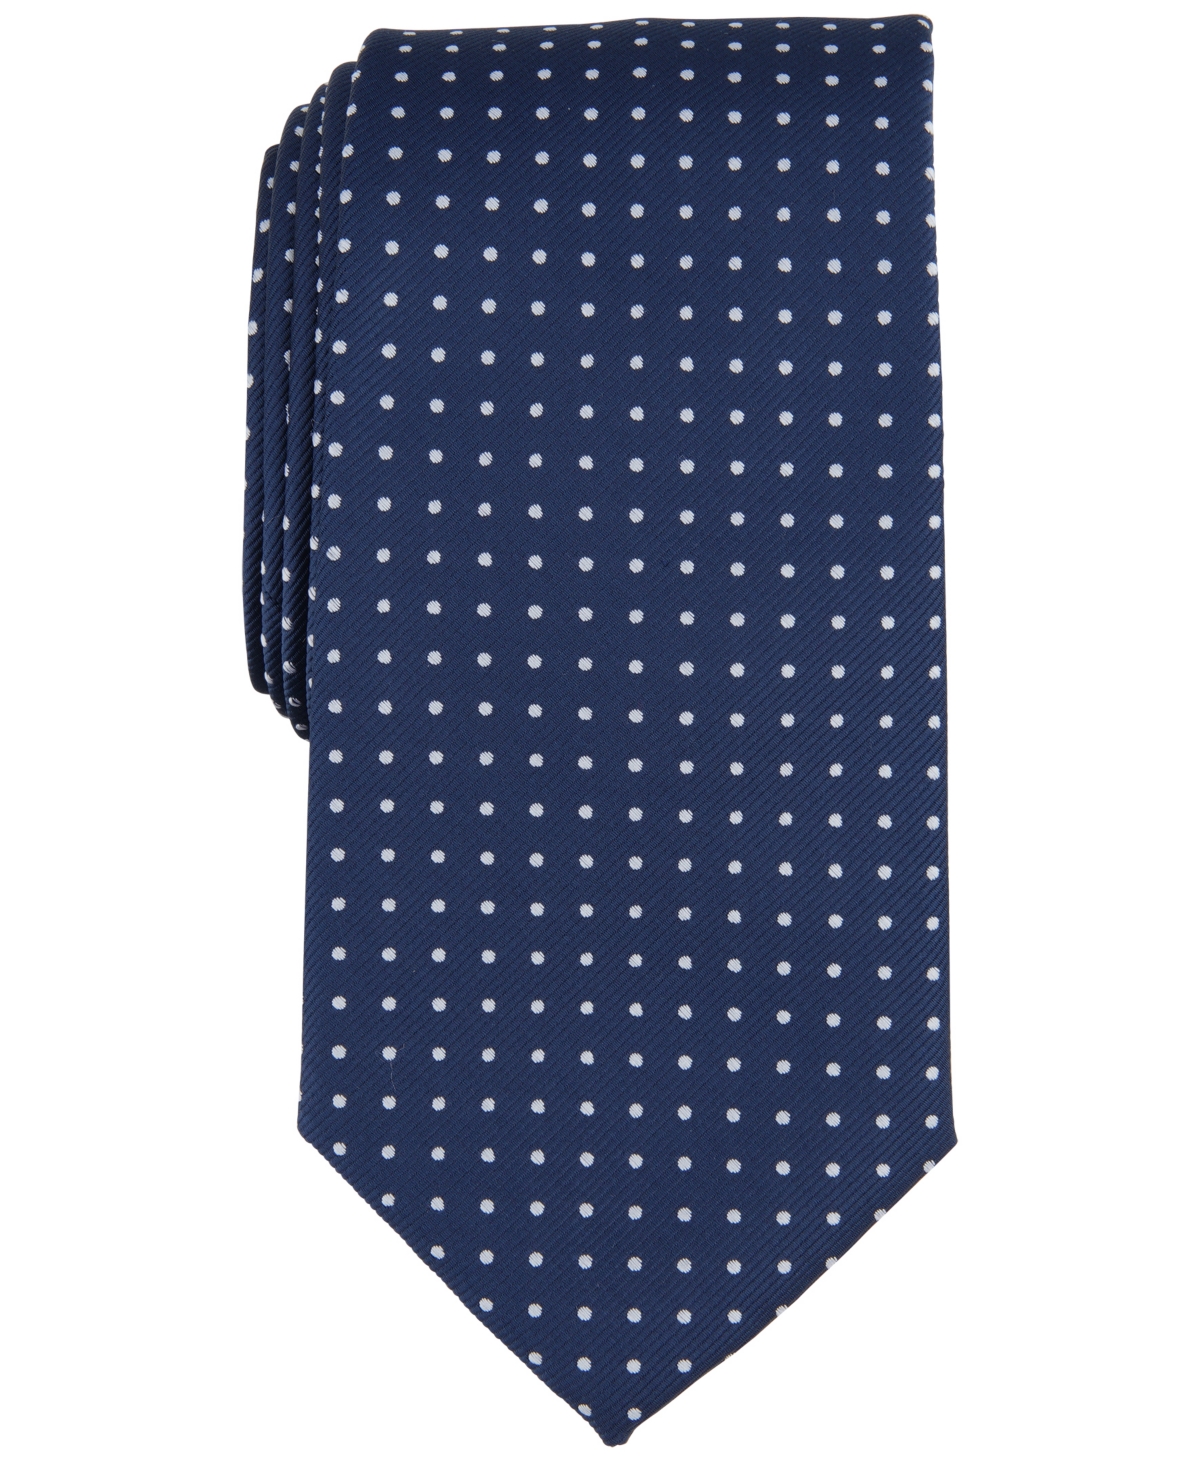 Men's Nantucket Dot Tie, Created for Macy's - Navy